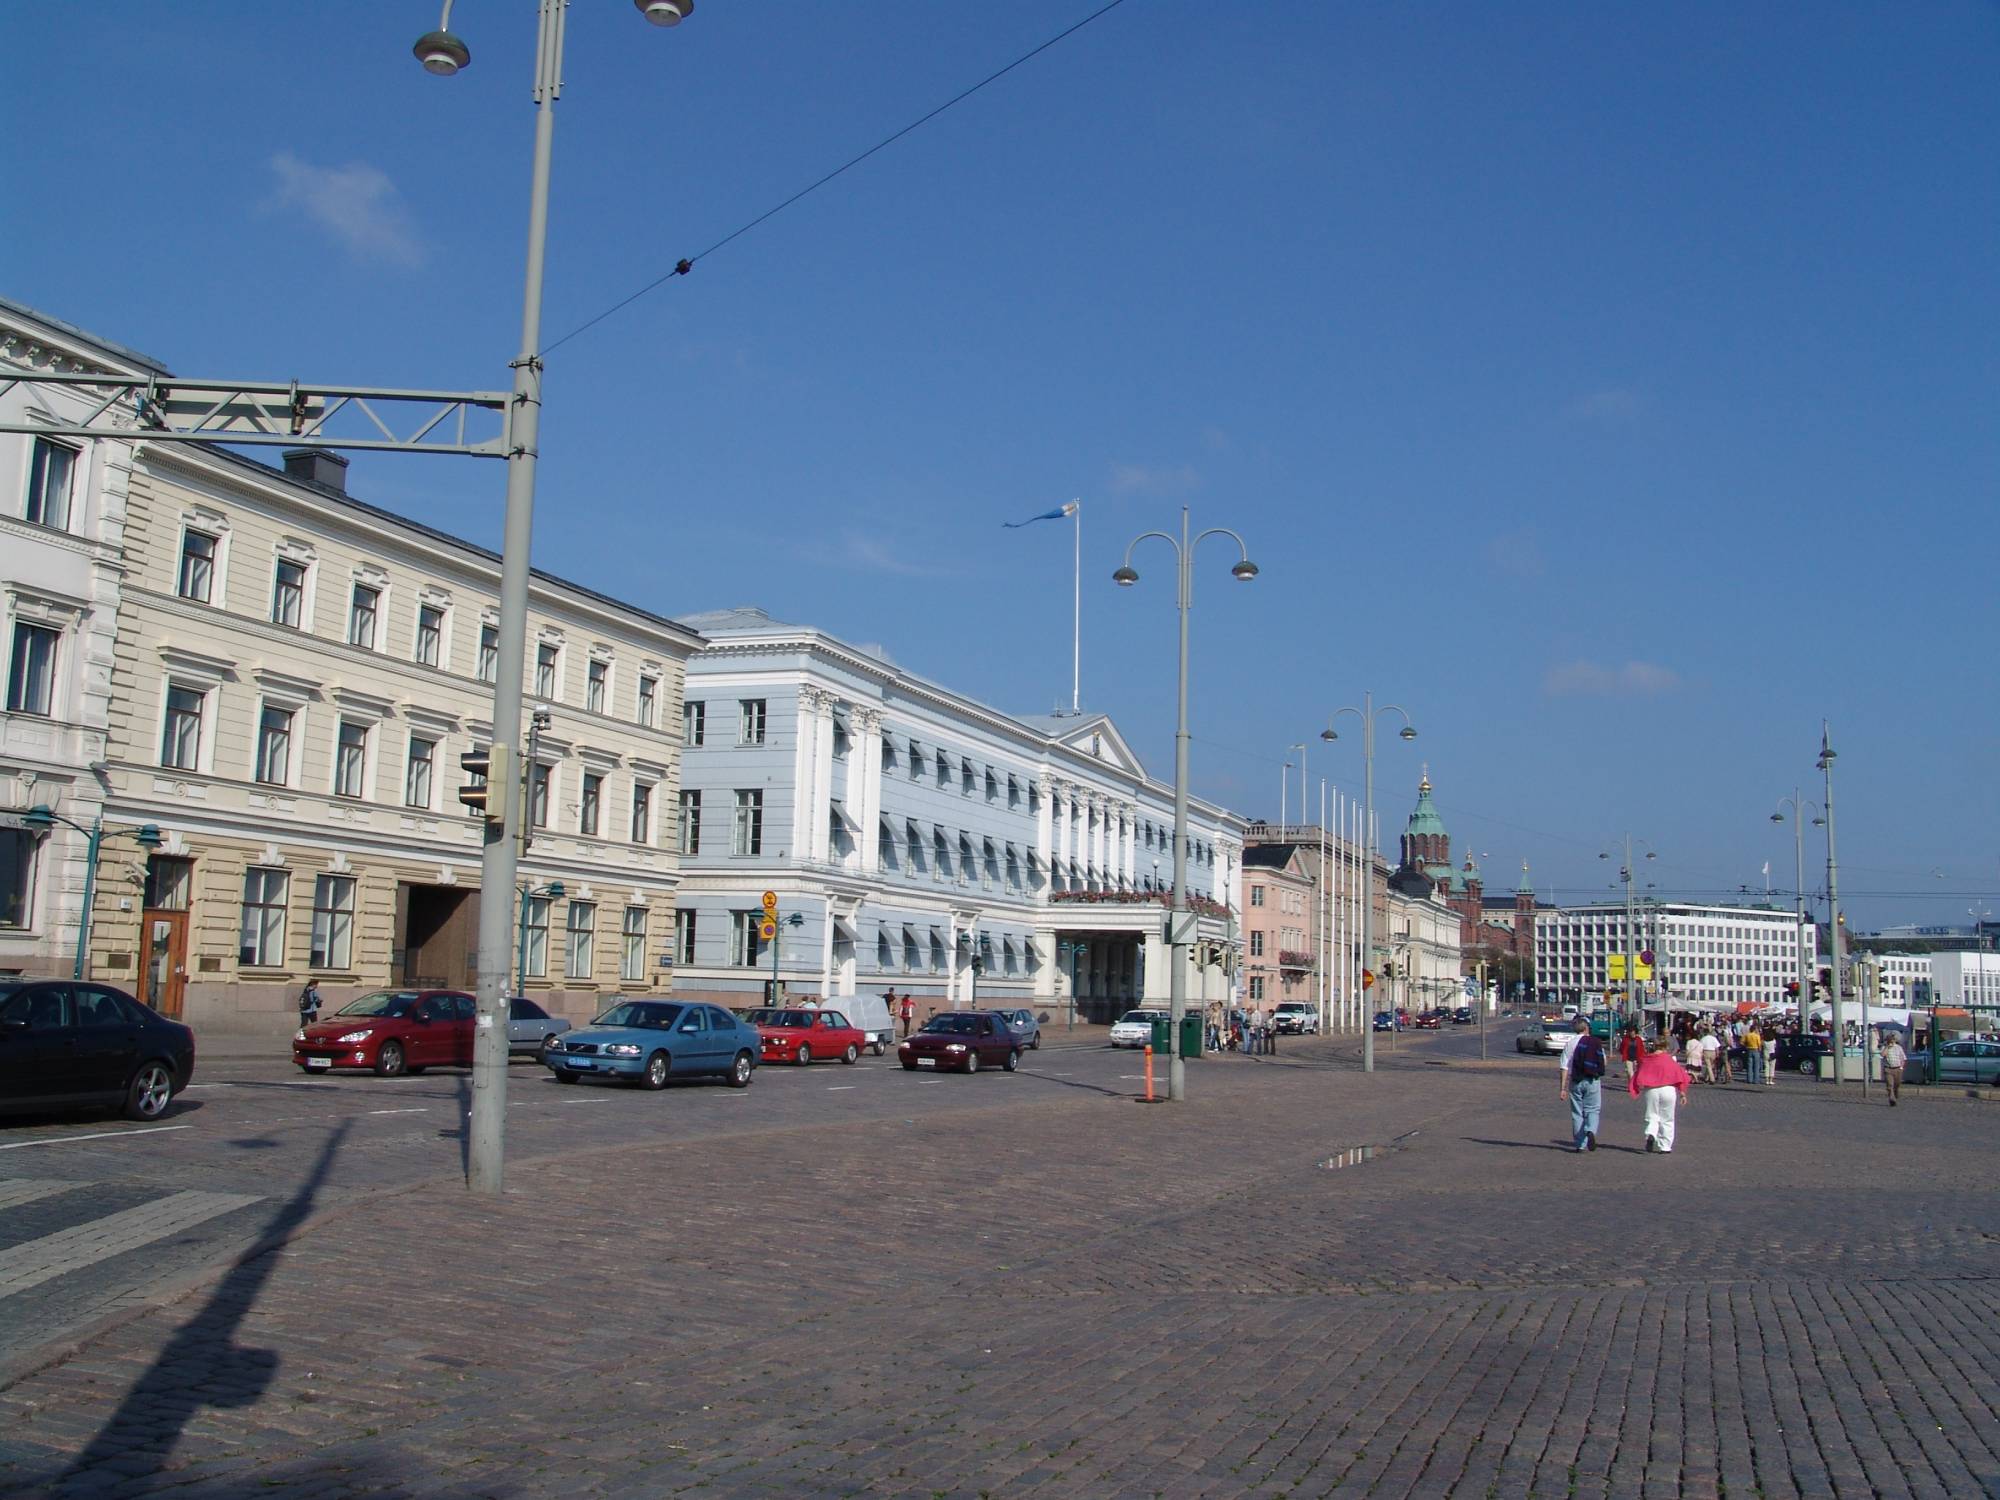 Helsinki - Market Square